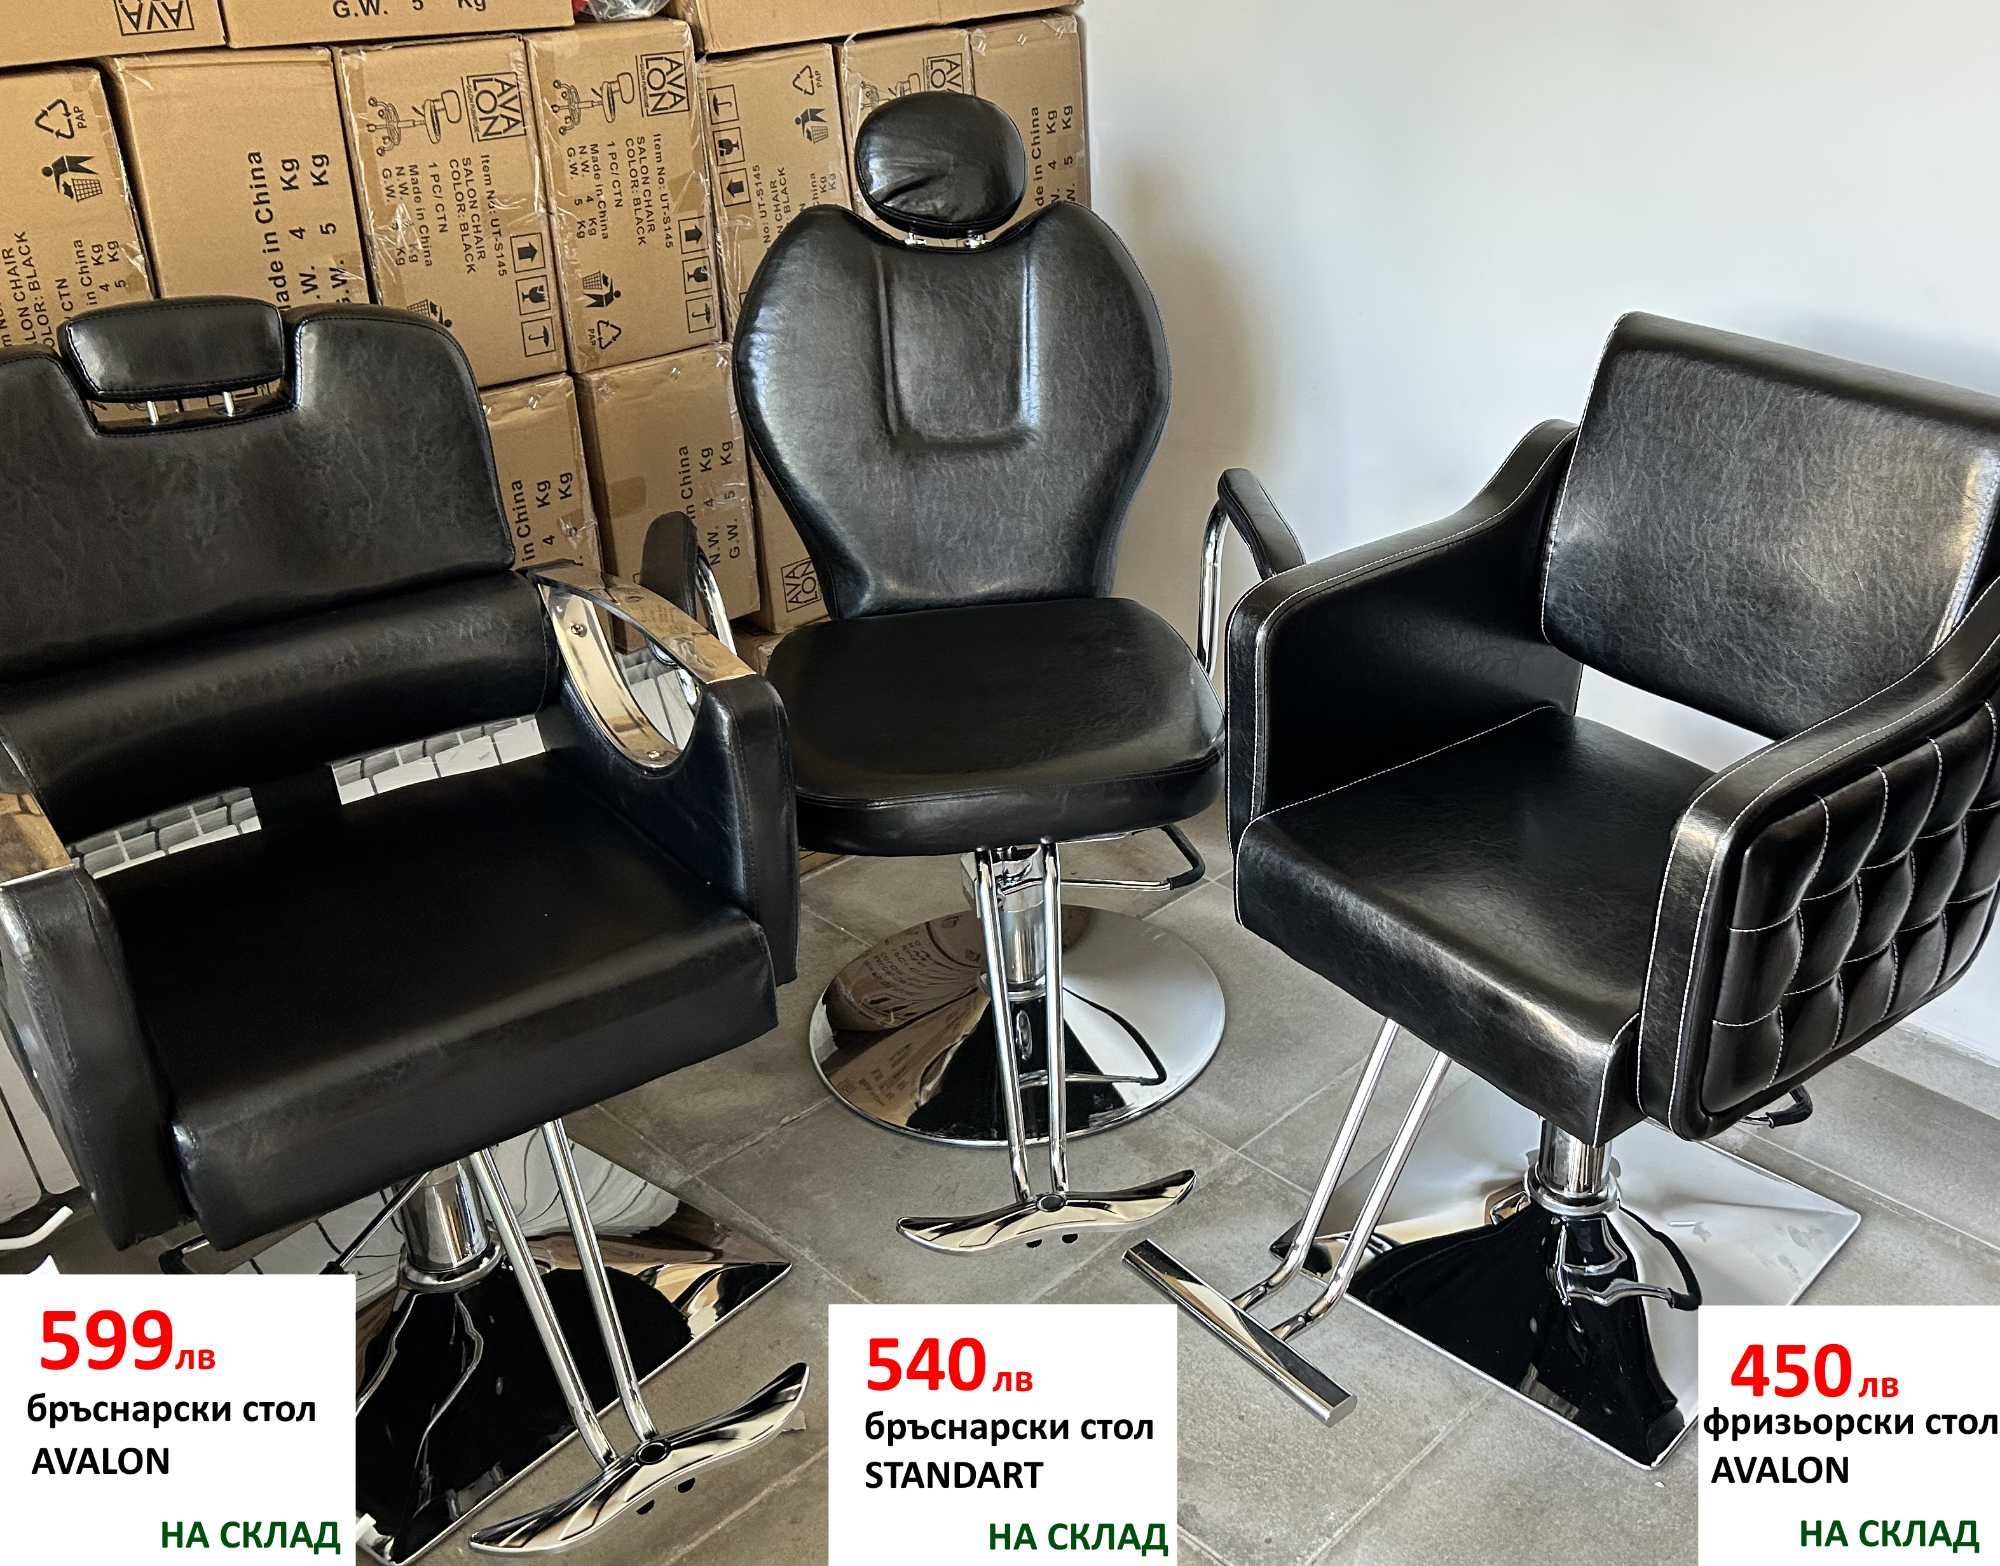 Евтин бръснарски стол два модела от 540 и 570 лева